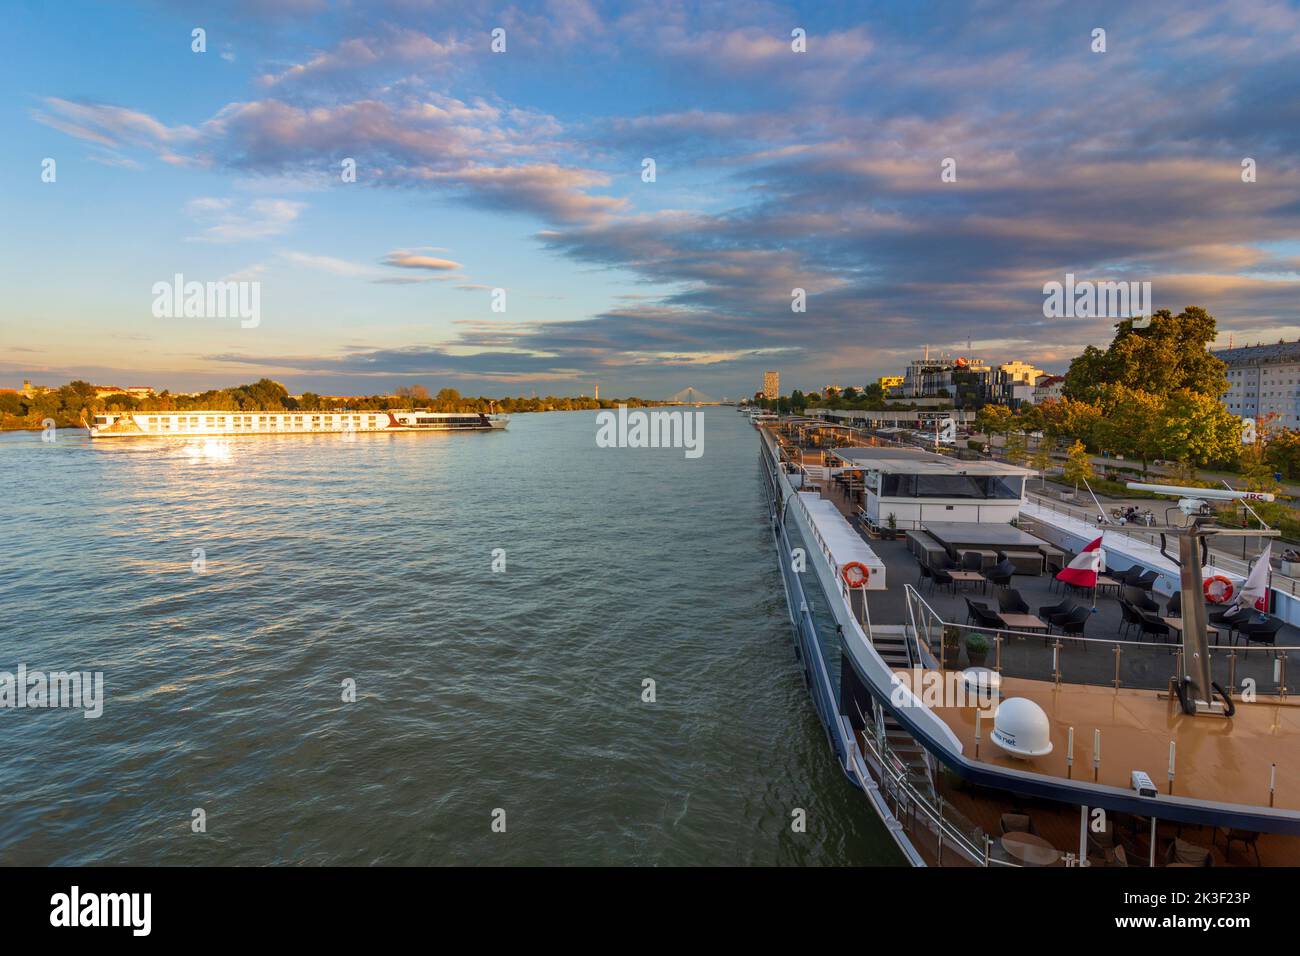 Wien, Vienna: river Donau (Danube), cruise ships, one is turning around, at bridge Reichsbrücke in 02. Leopoldstadt, Wien, Austria Stock Photo